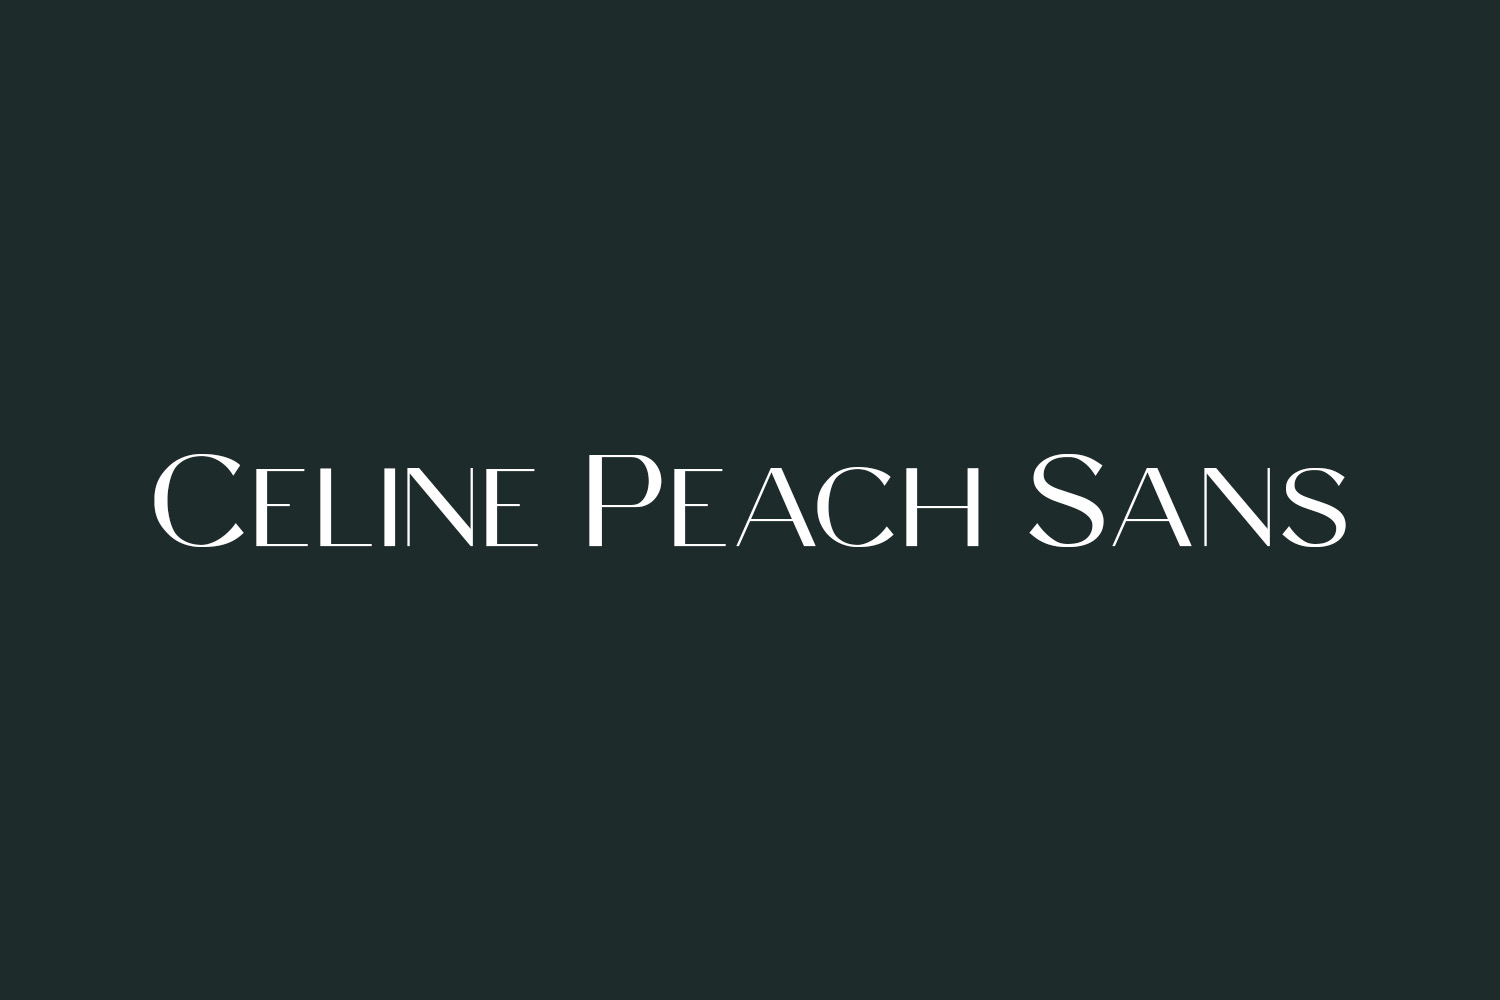 Celine Peach Sans Free Font